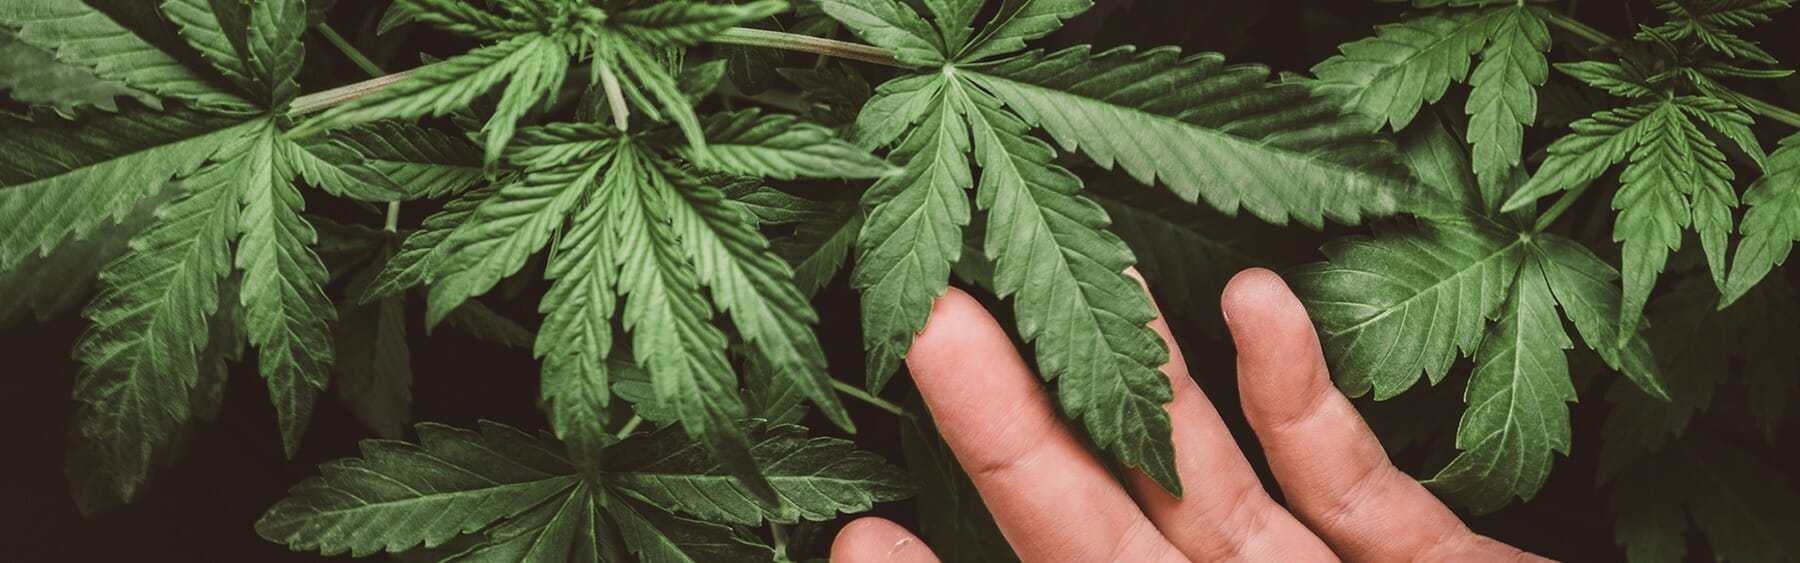 La mano de una persona tendida hacia una planta de cannabis.